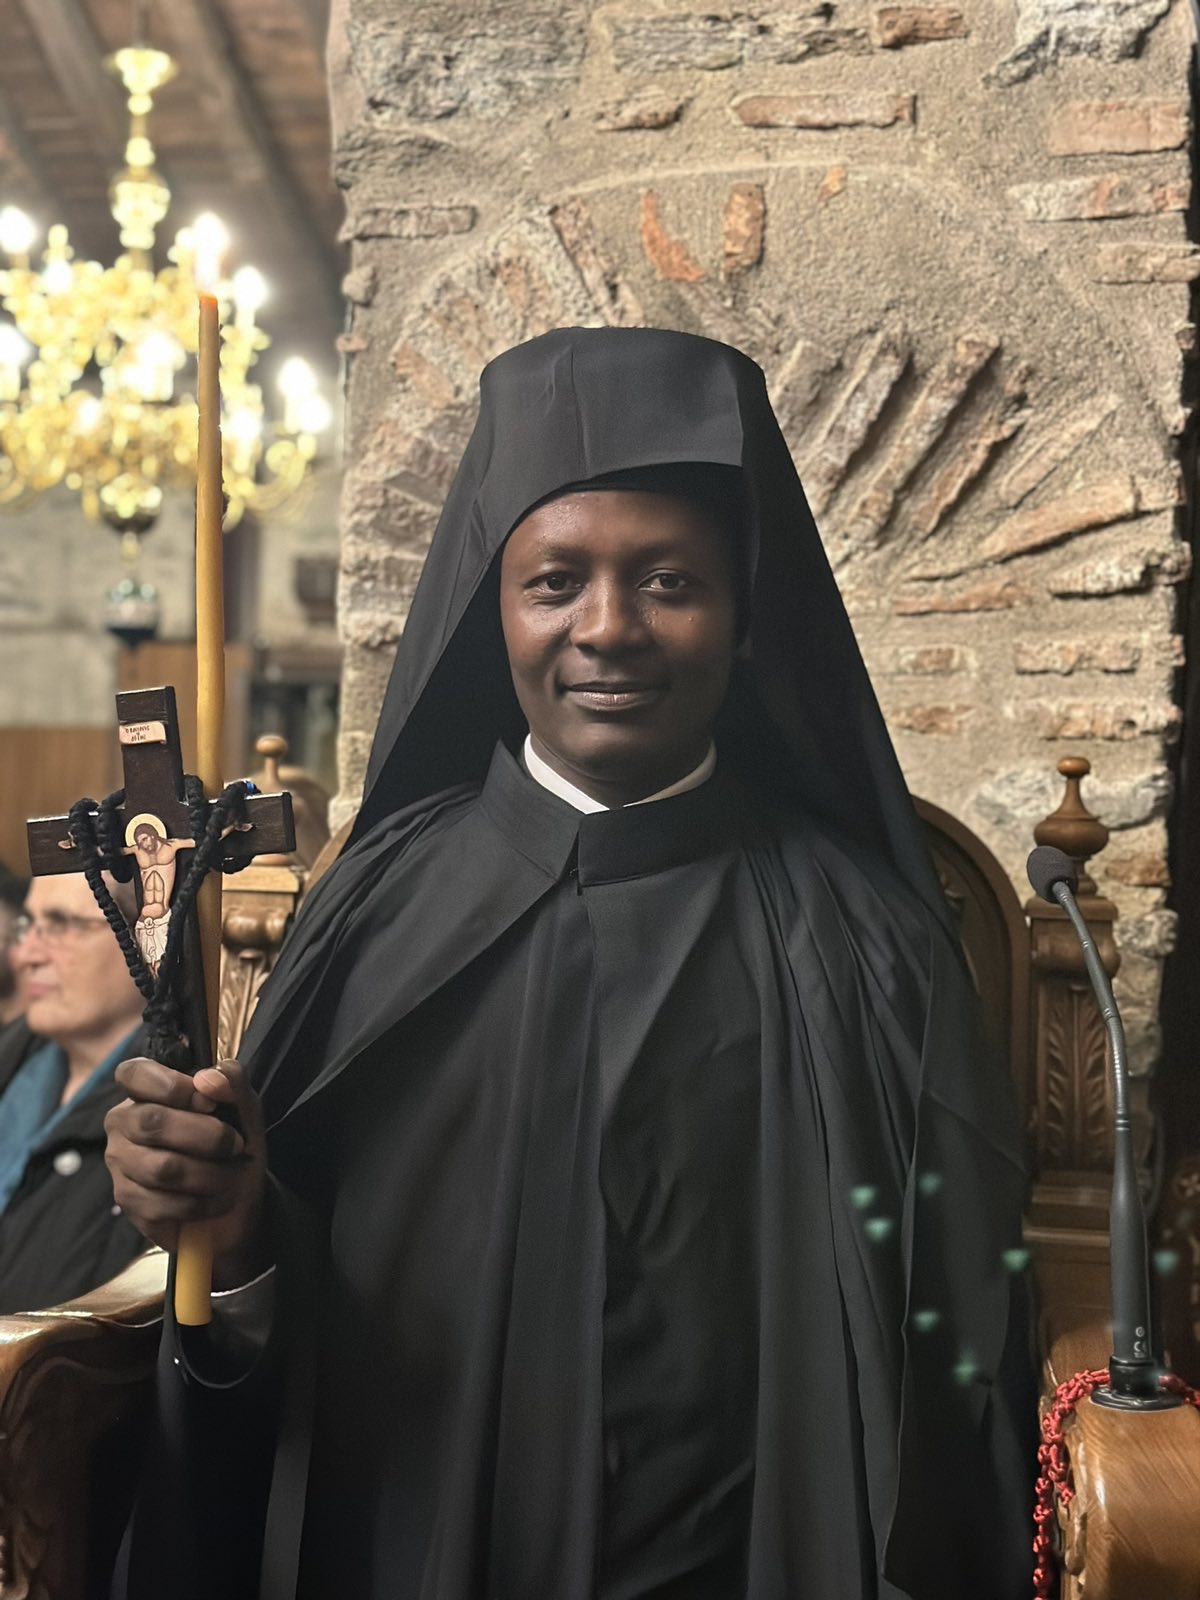 Χειροτονήθηκε Ιεροδιάκονος ο υιός του πρώτου Ορθόδοξου Τανζανού κληρικού